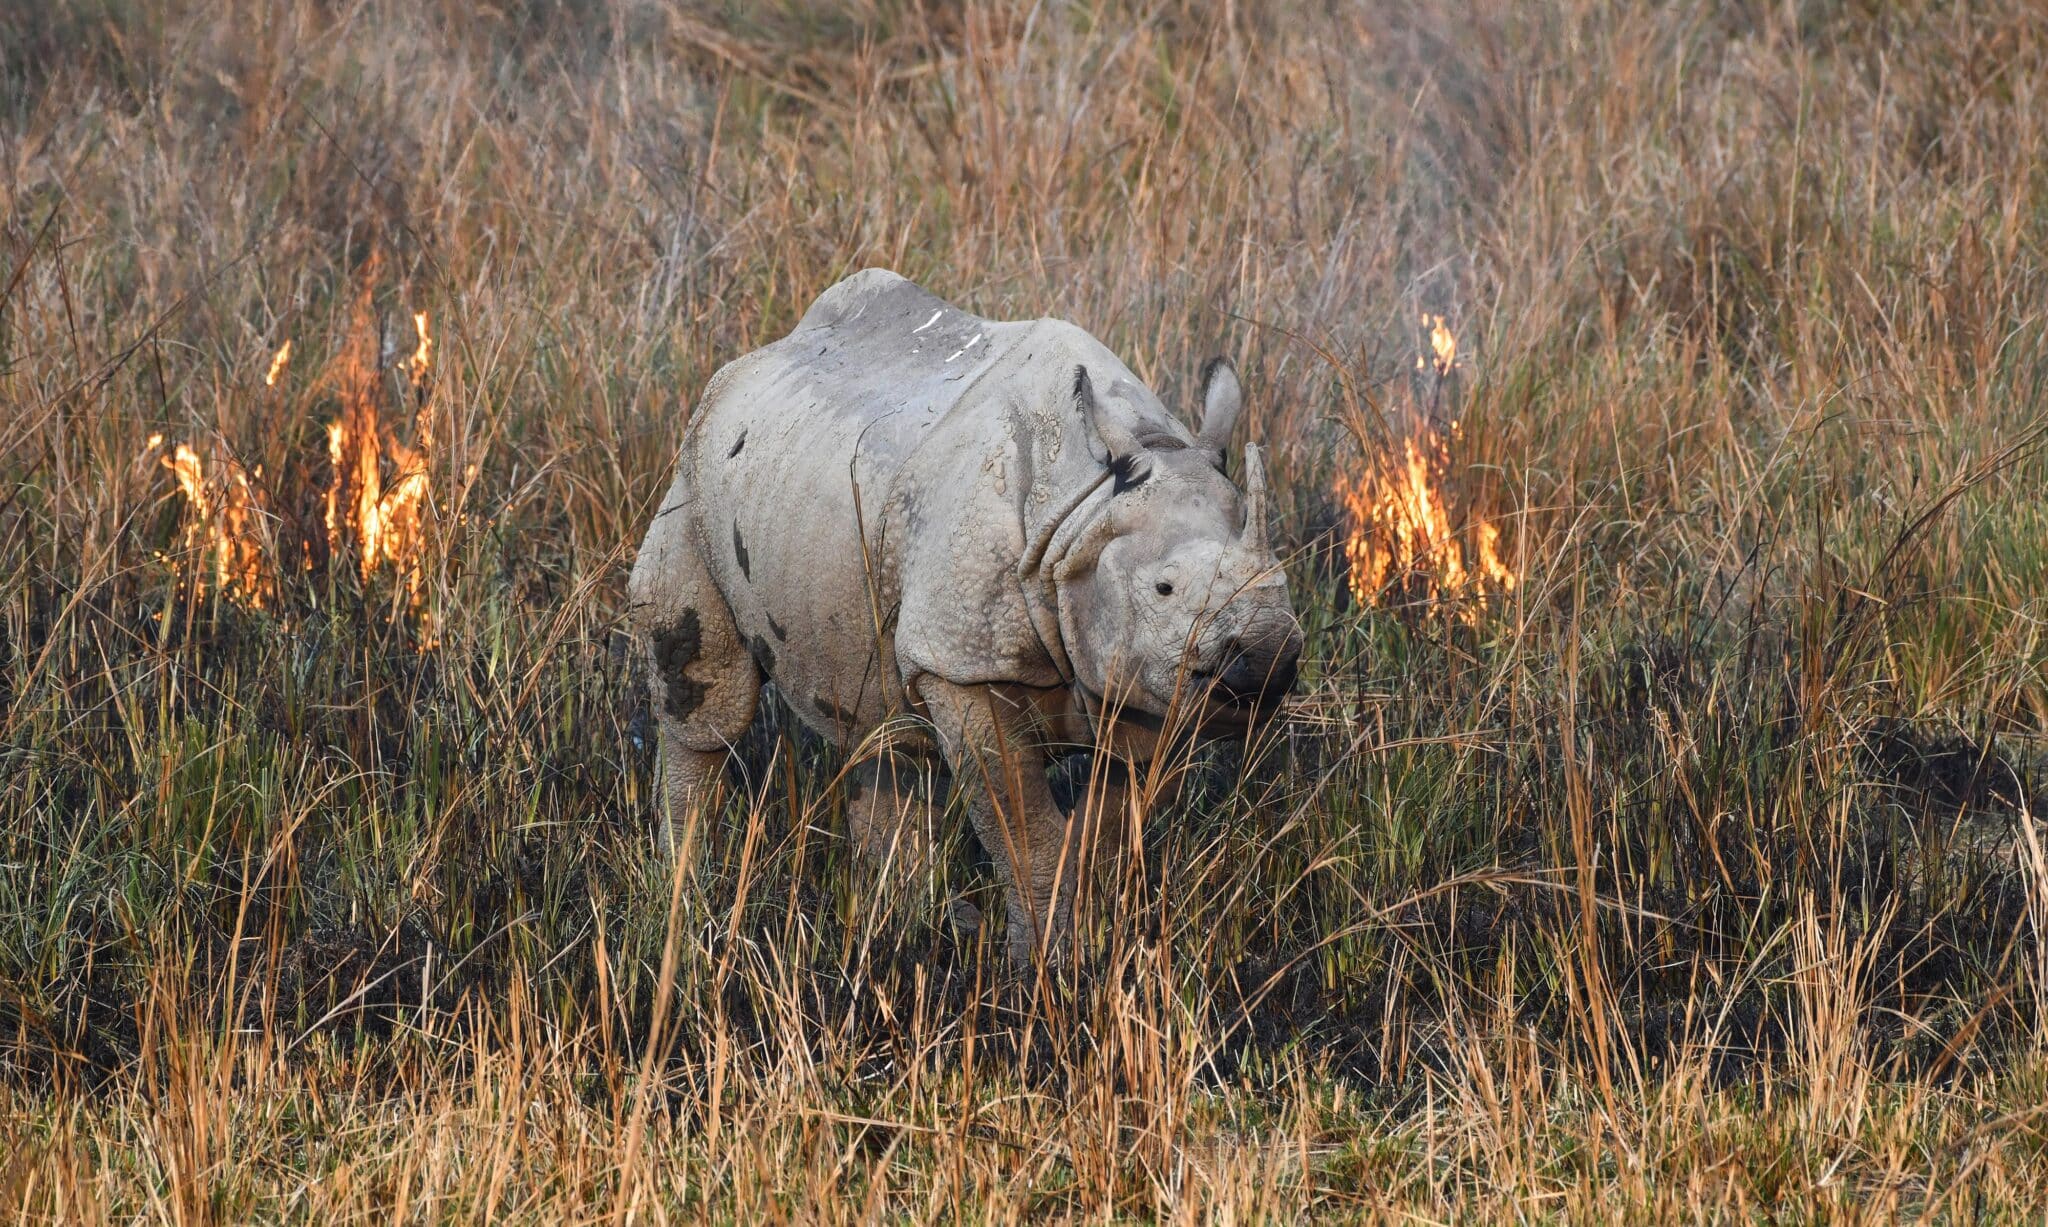 rhinoceros walks through a wildfire in a field